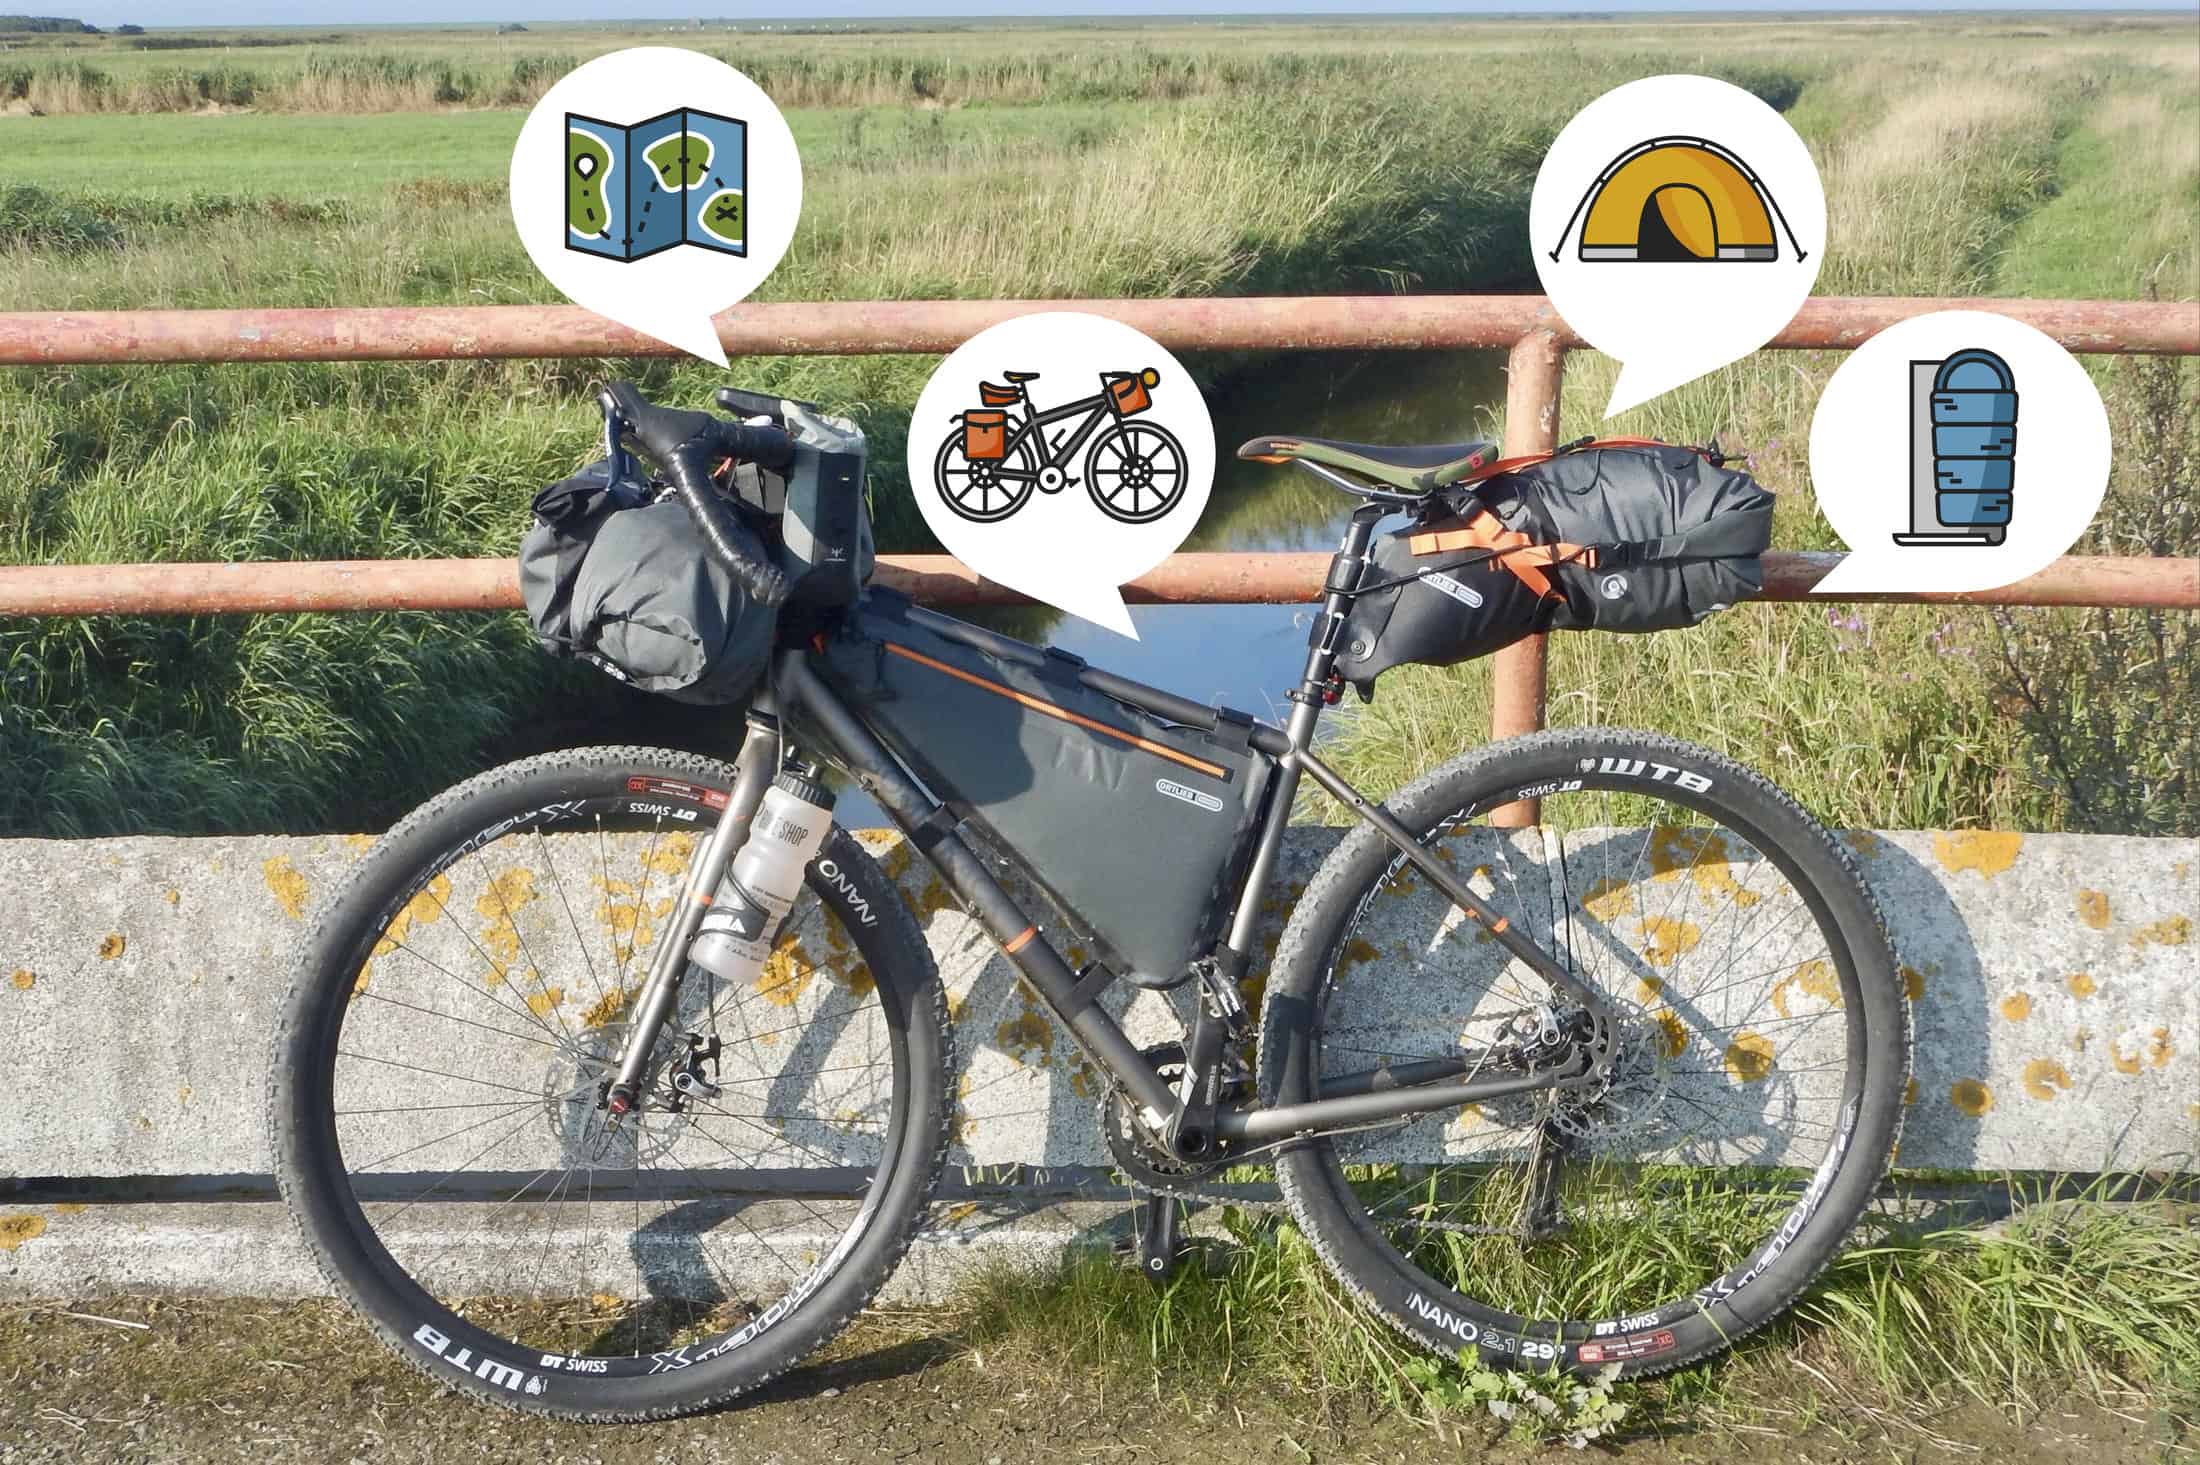 Bikepacking, oplev naturen og dyrlivet på to hjul. - En oplagt måde at udnytte stier, grusveje og vejen til at komme ud i naturen. Erik B. Jørgensen